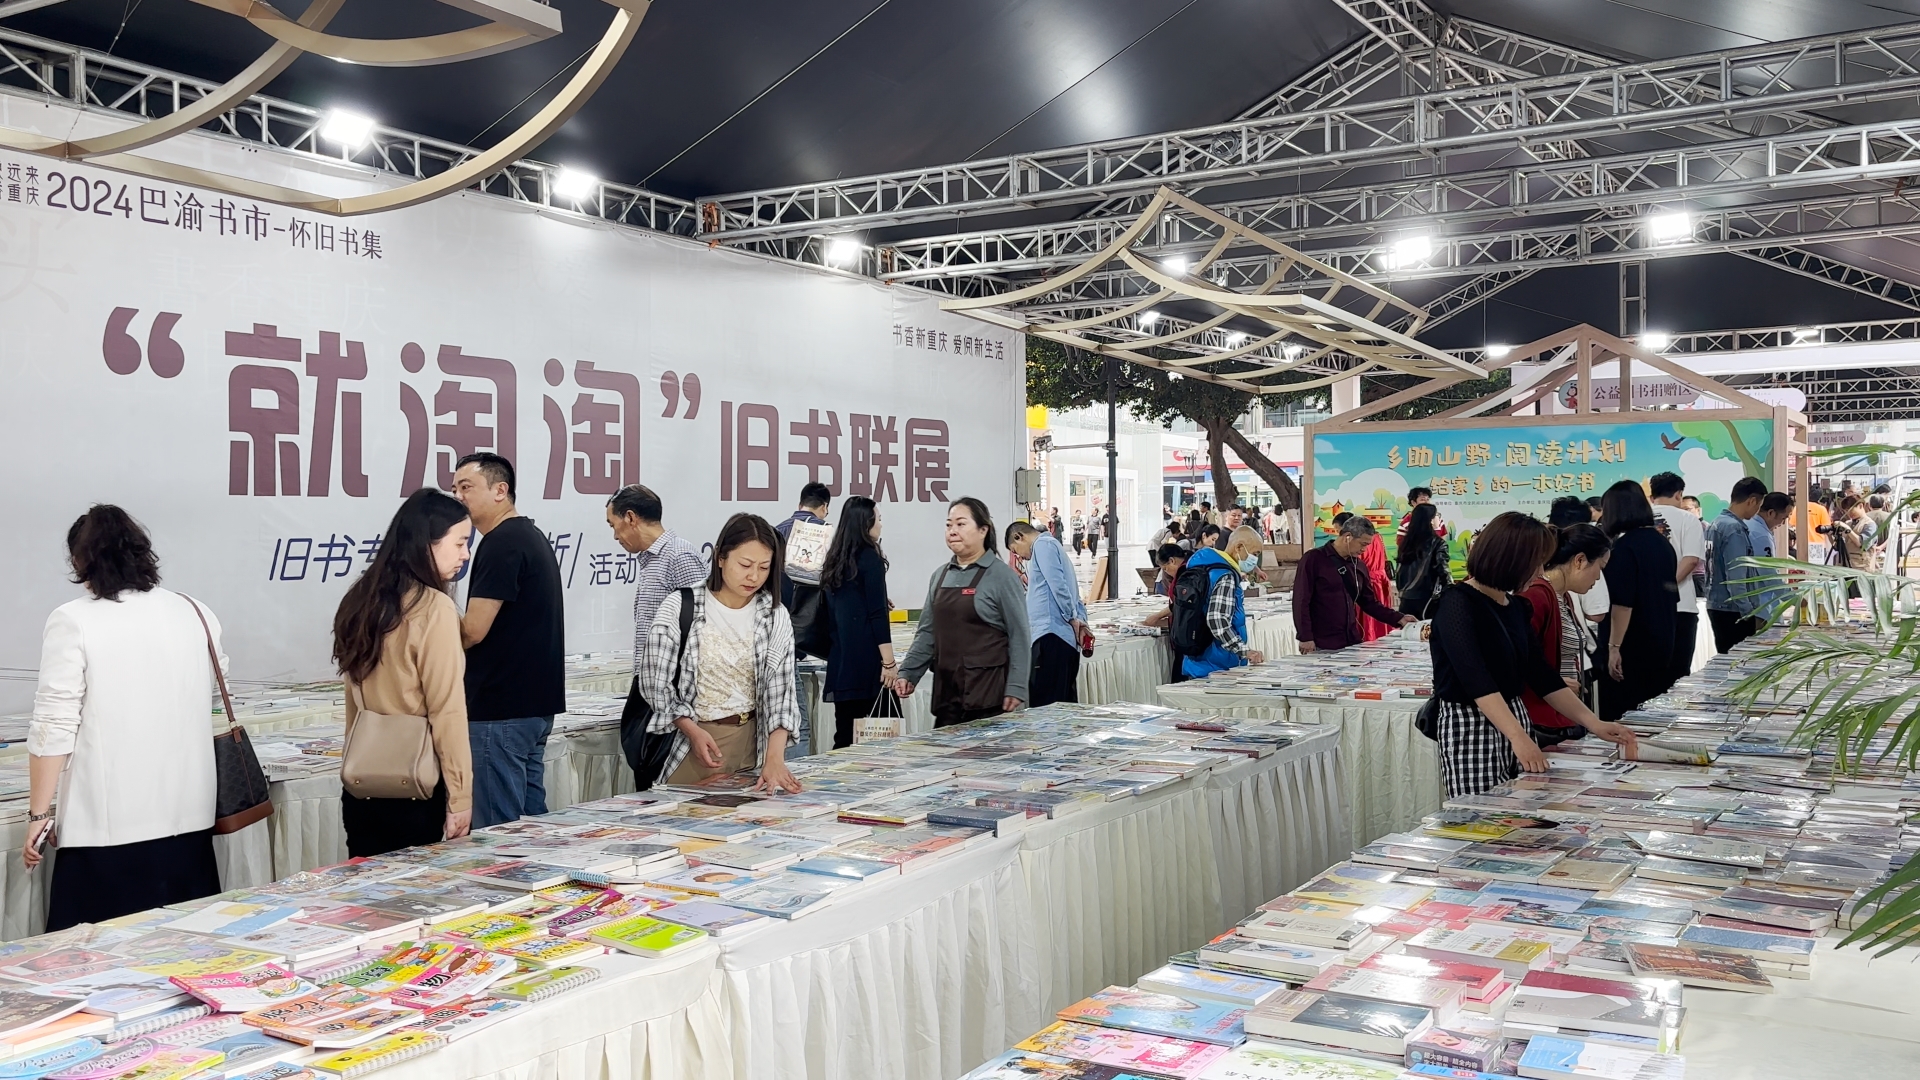 超低折扣 超多图书 “近悦远来·书香重庆”2024巴渝书市开幕